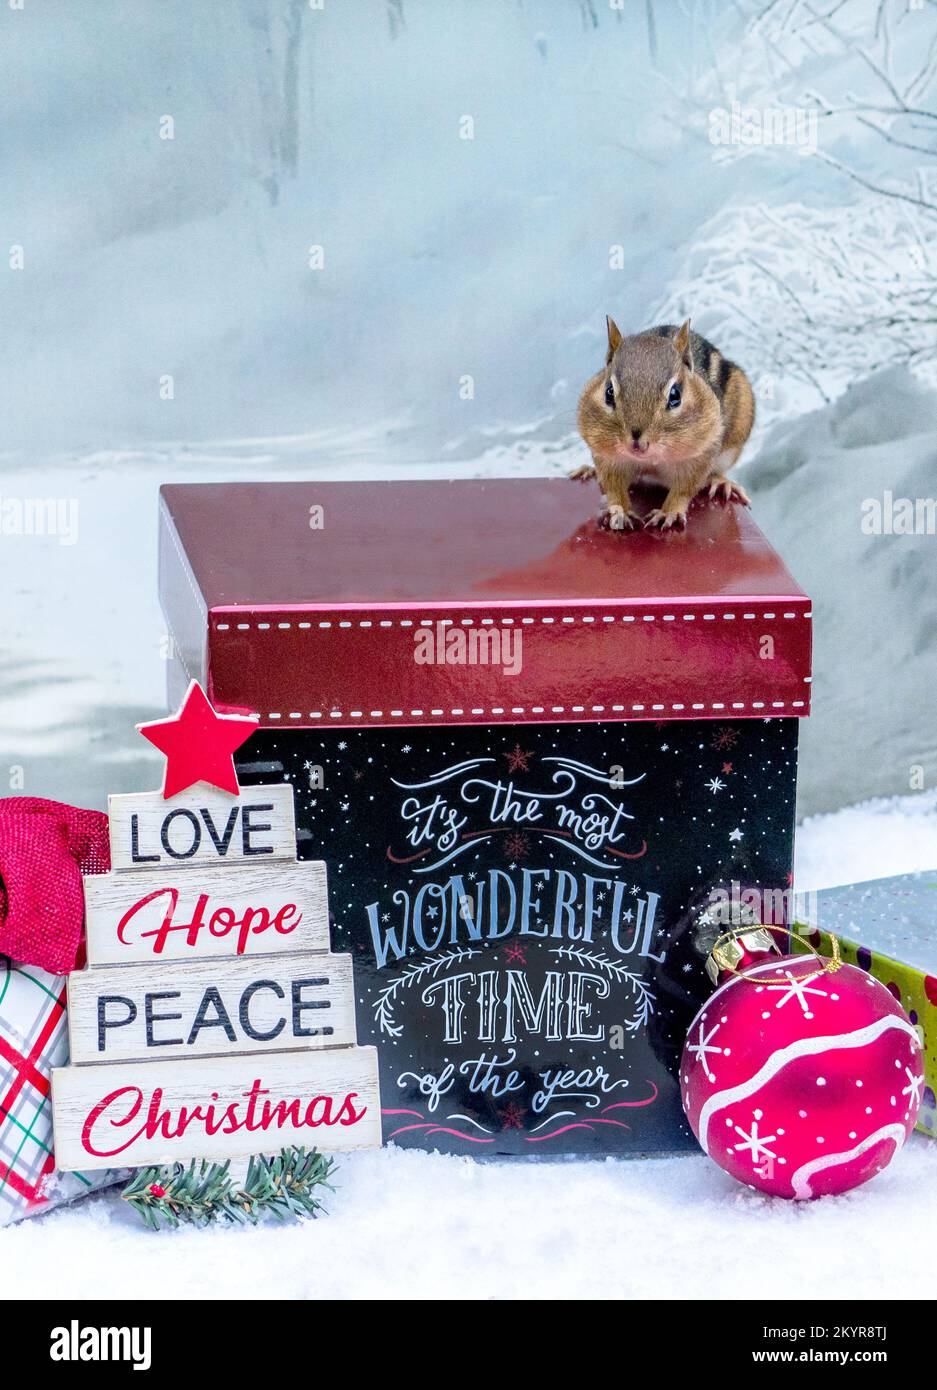 Der kleine Streifenhörnchen stimmt zu, dass Weihnachten die schönste Zeit des Jahres ist Stockfoto